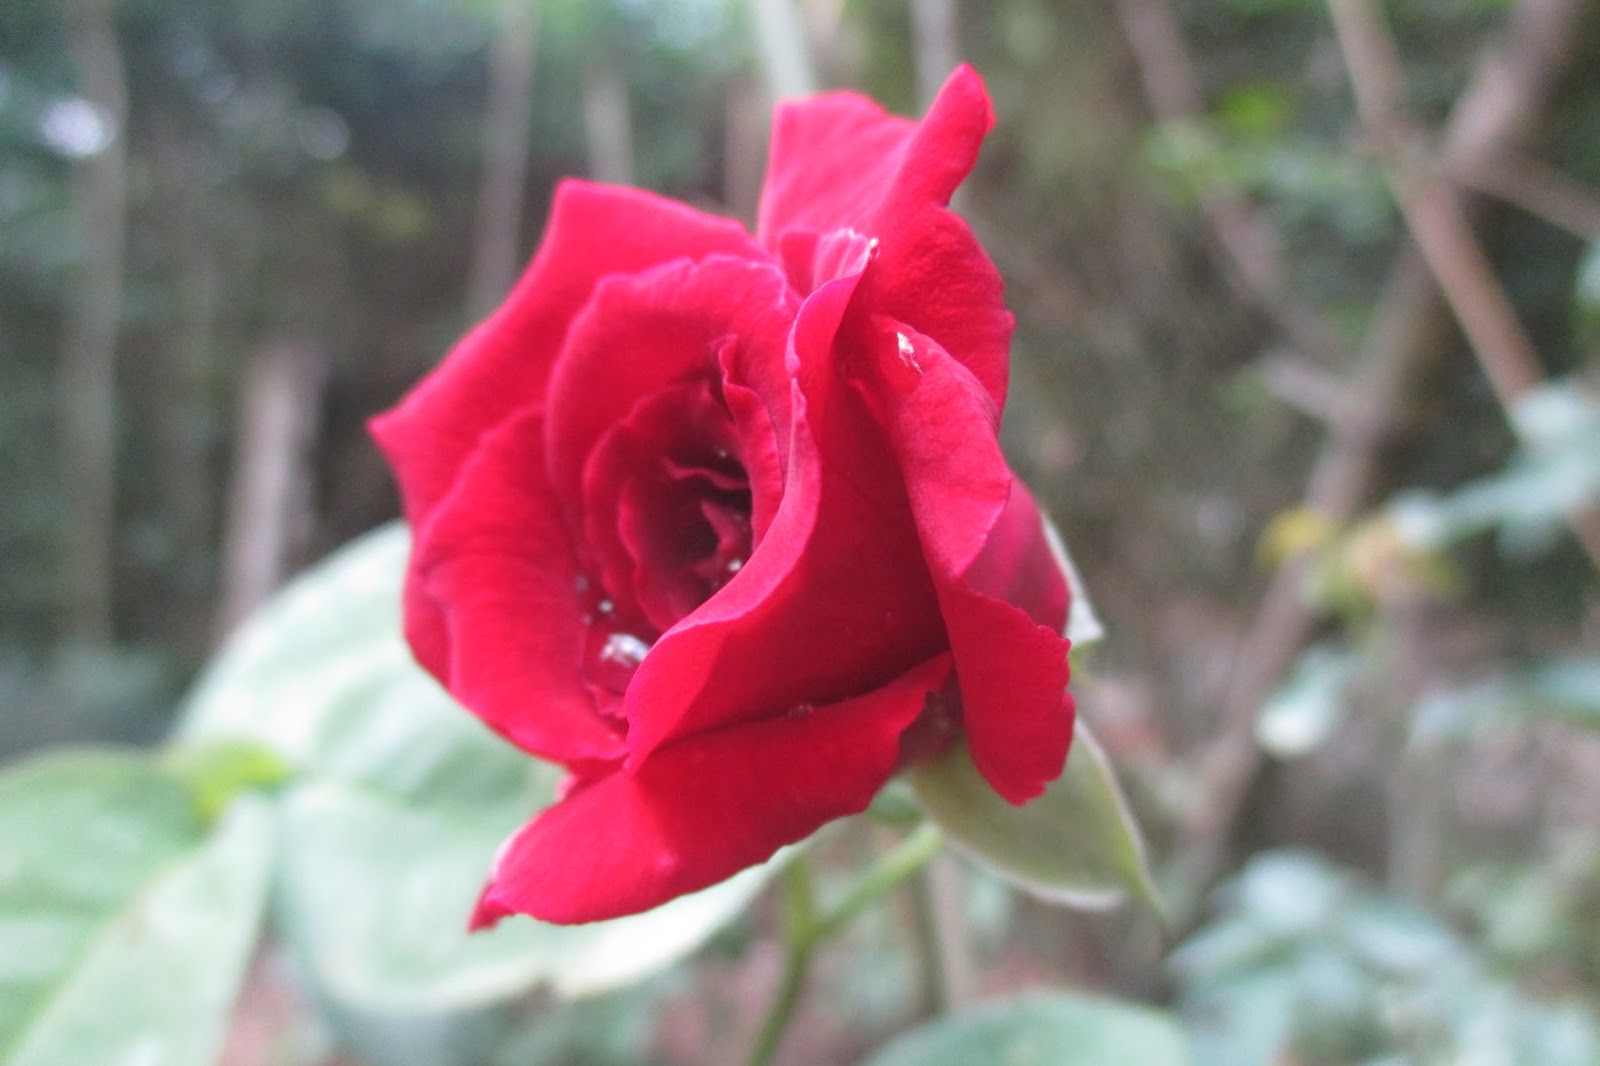 Tuyển tập những hình ảnh hoa hồng đẹp và ý nghĩa của những đóa hoa hồng có thể chưa biết - [Kích thước hình ảnh: 1600x1066 px]